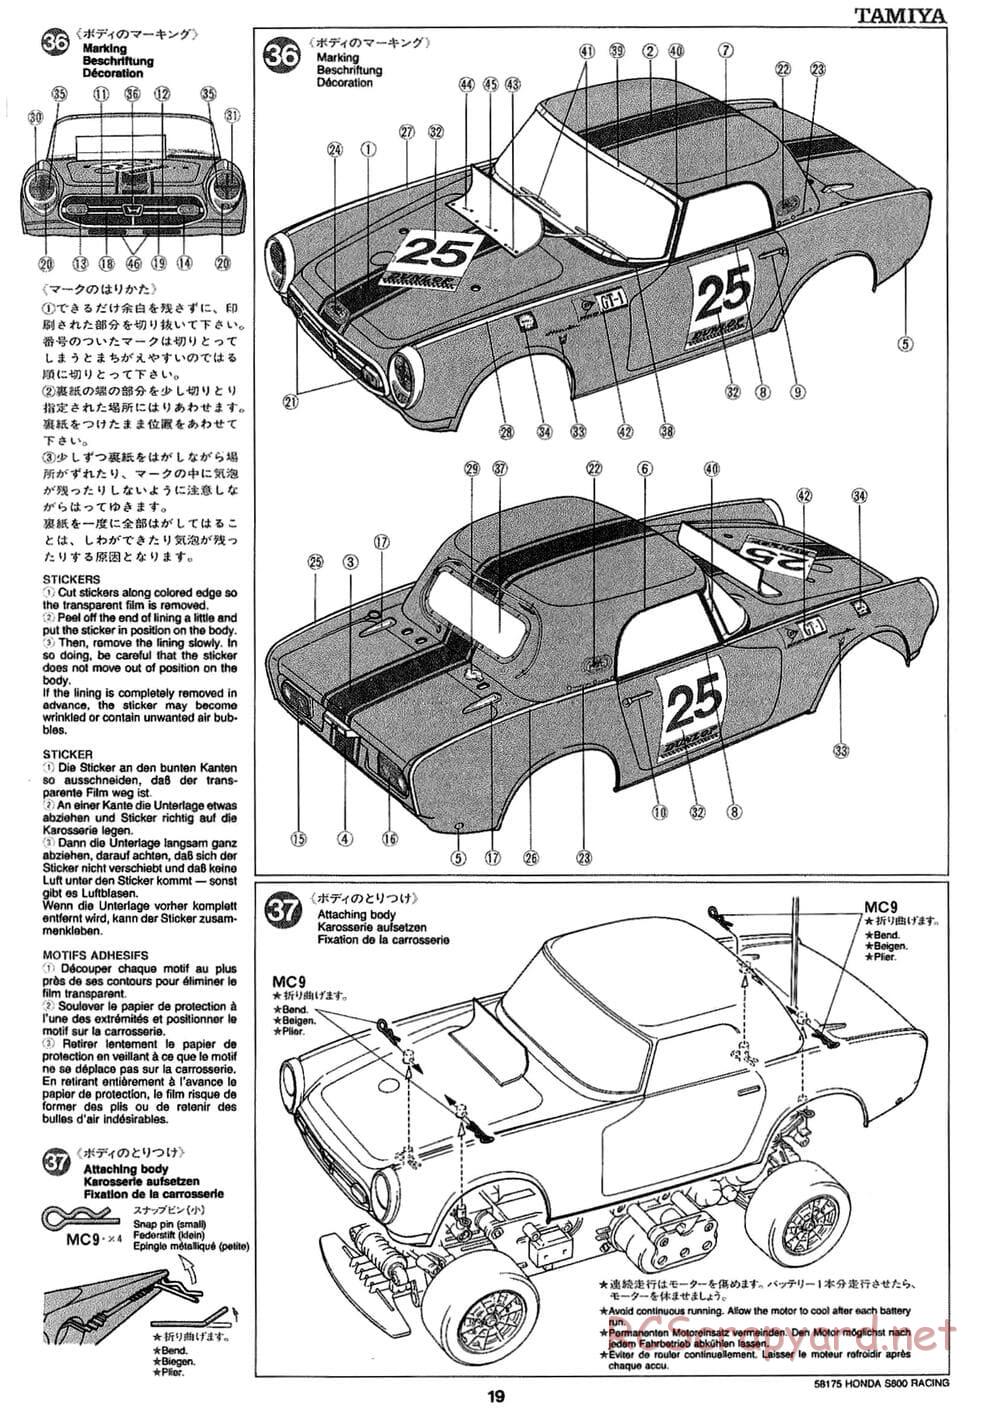 Tamiya - Honda S800 Racing - M02 Chassis - Manual - Page 19